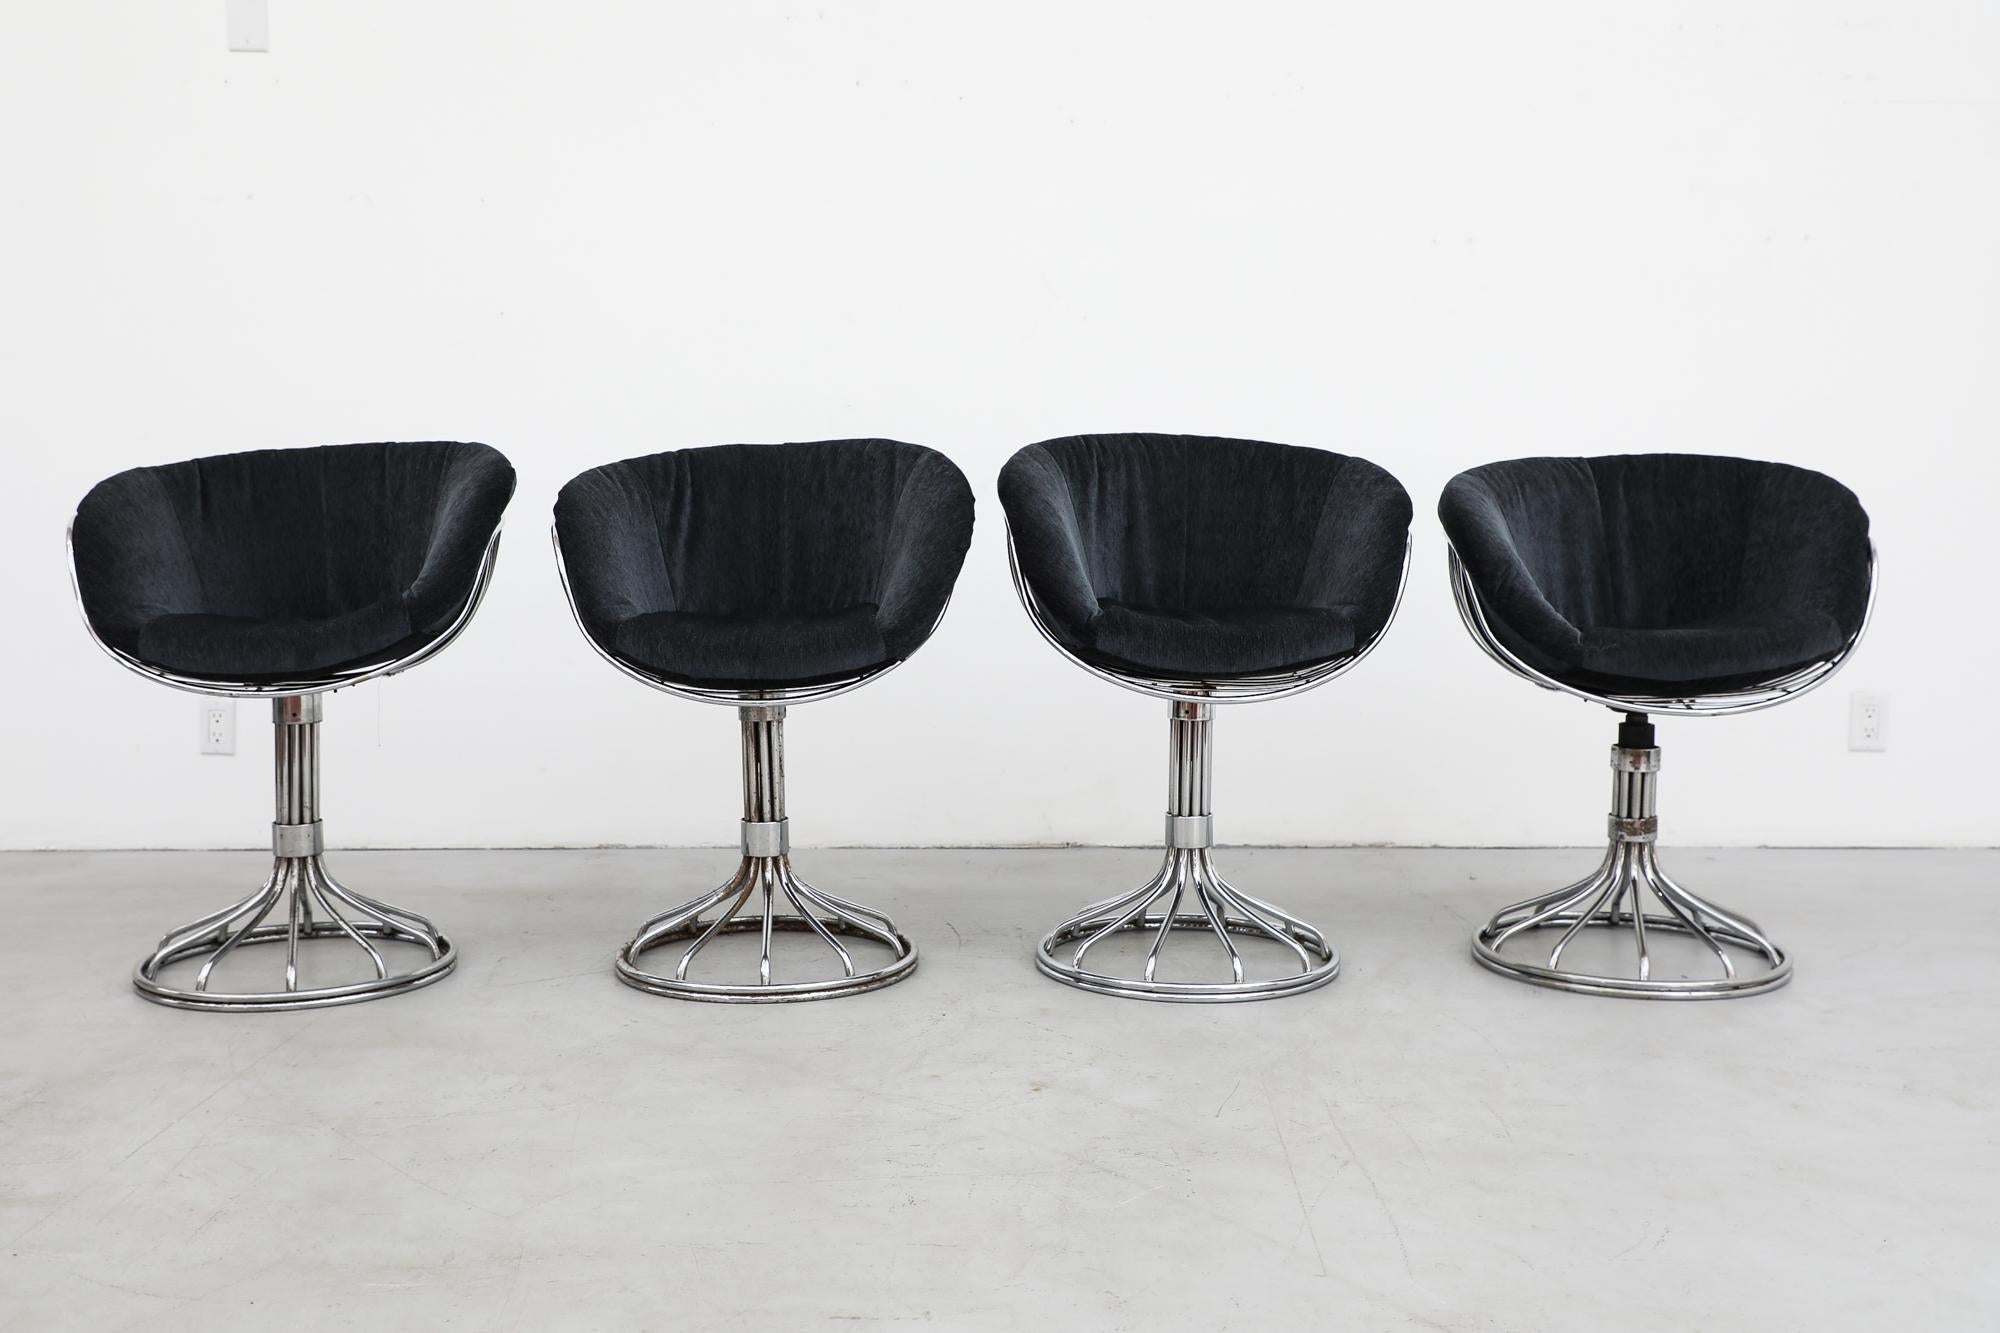 Ensemble de chaises italiennes vintage à structure métallique chromée de Gastone Rinaldi pour RIMA. Coussins en velours de minuit nouvellement rembourrés sur des cadres métalliques sculpturaux et élégants avec des bases de piédestal pivotantes. Les